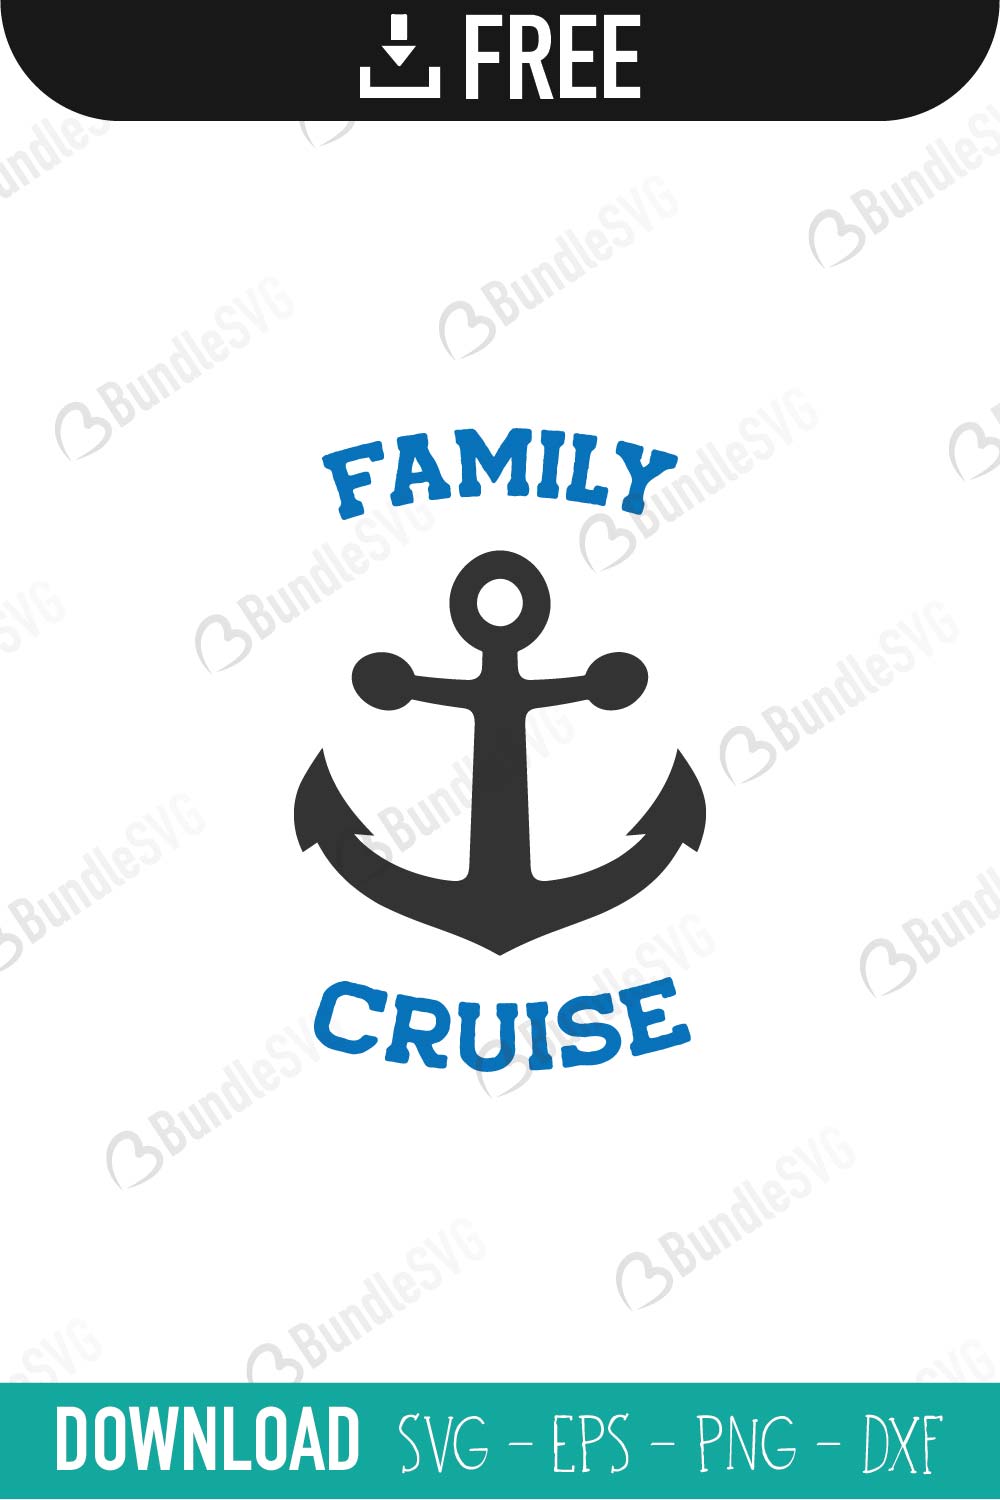 Download Family Cruise SVG Cut Files Free Download | BundleSVG